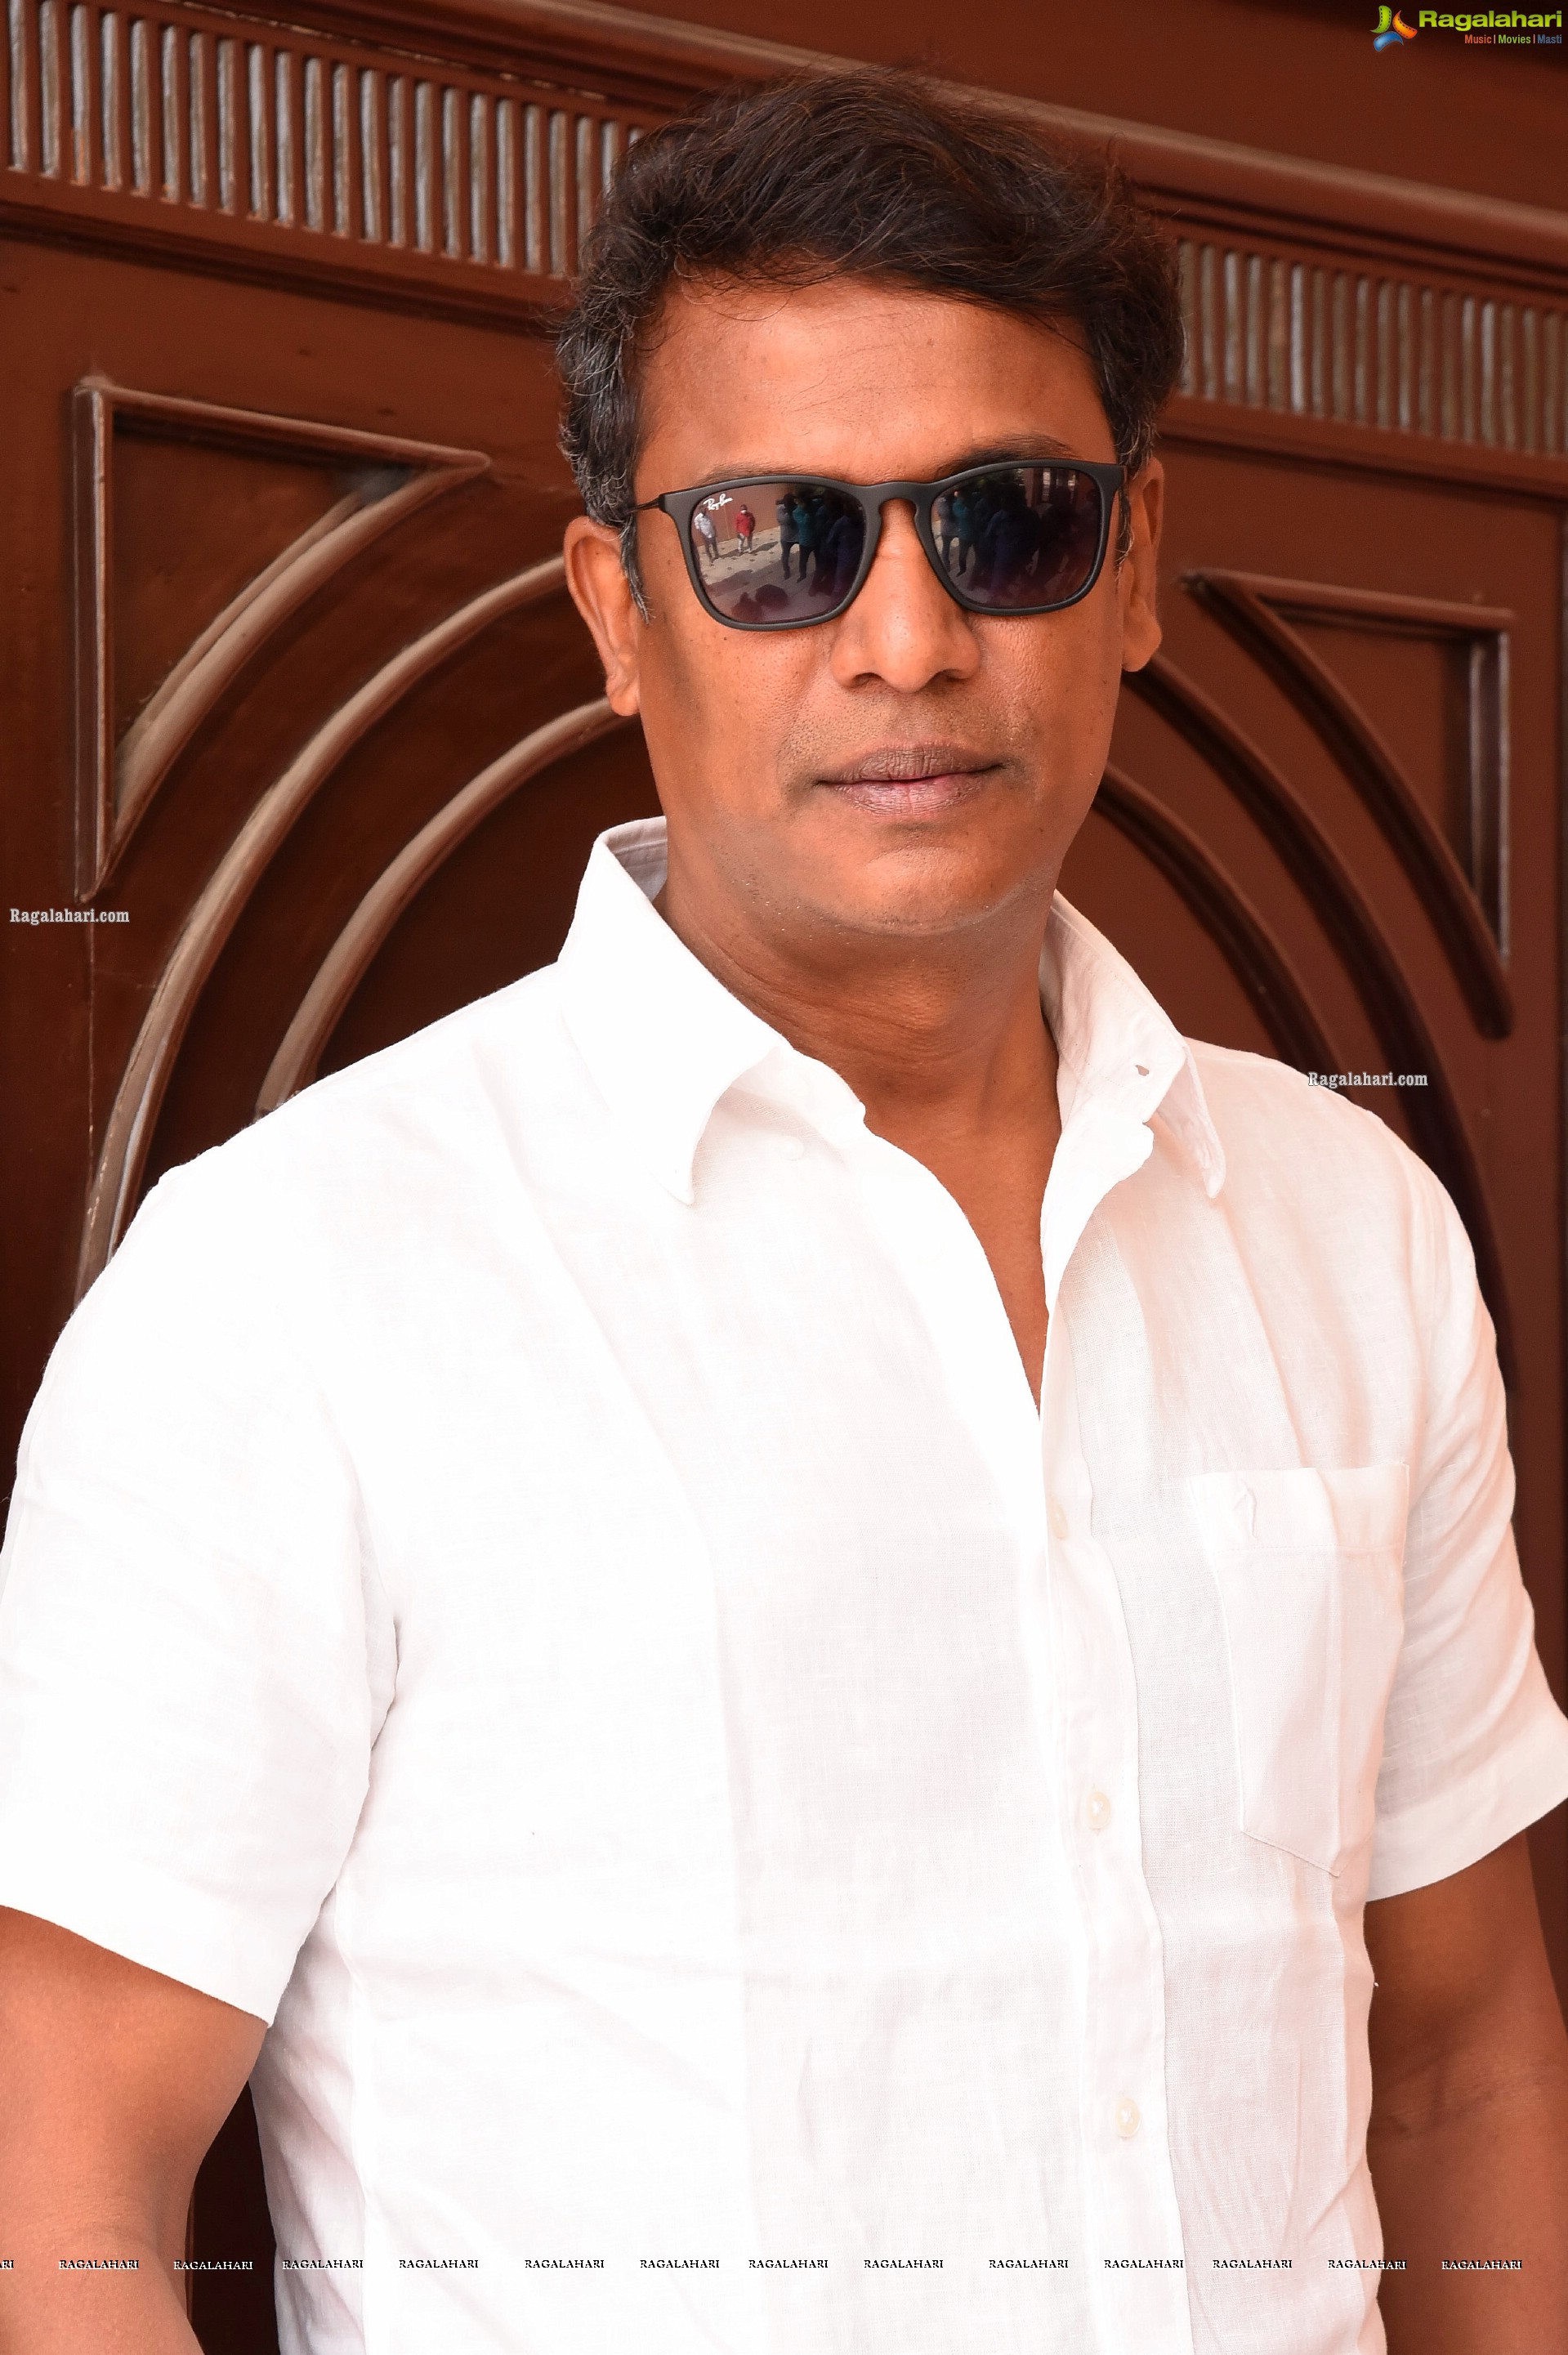 Samuthirakani at Krack Movie Interview, Photo Gallery